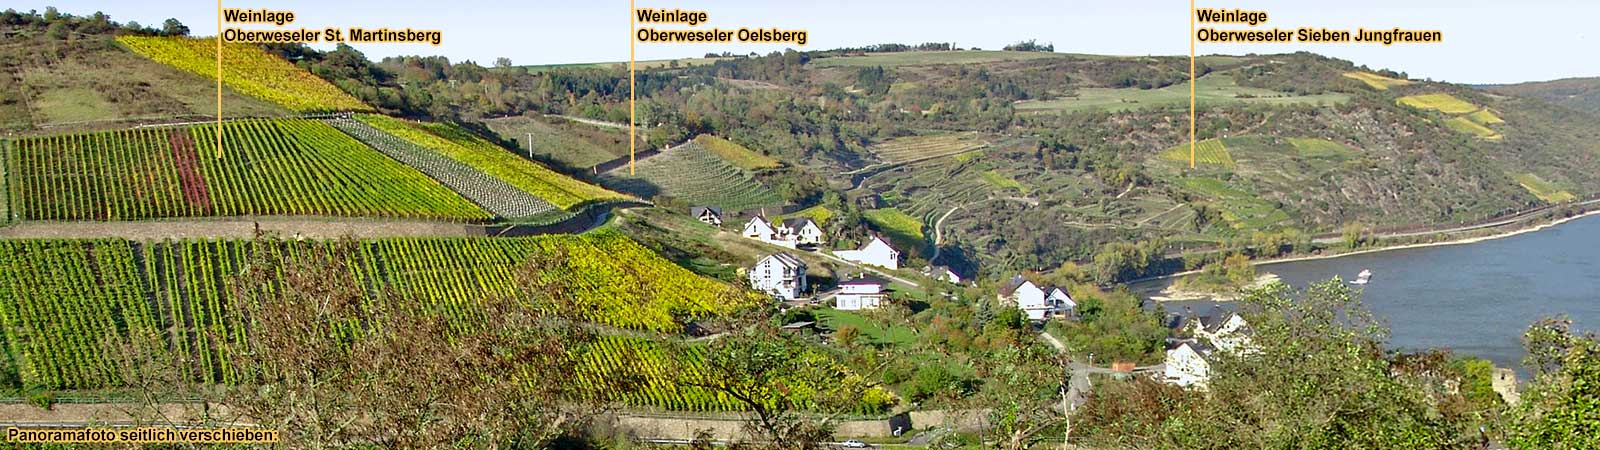 Oberweseler Weinlagen: St. Martinsberg, Oelsberg und Sieben Jungfrauen. Oberwesel am Mittelrhein.